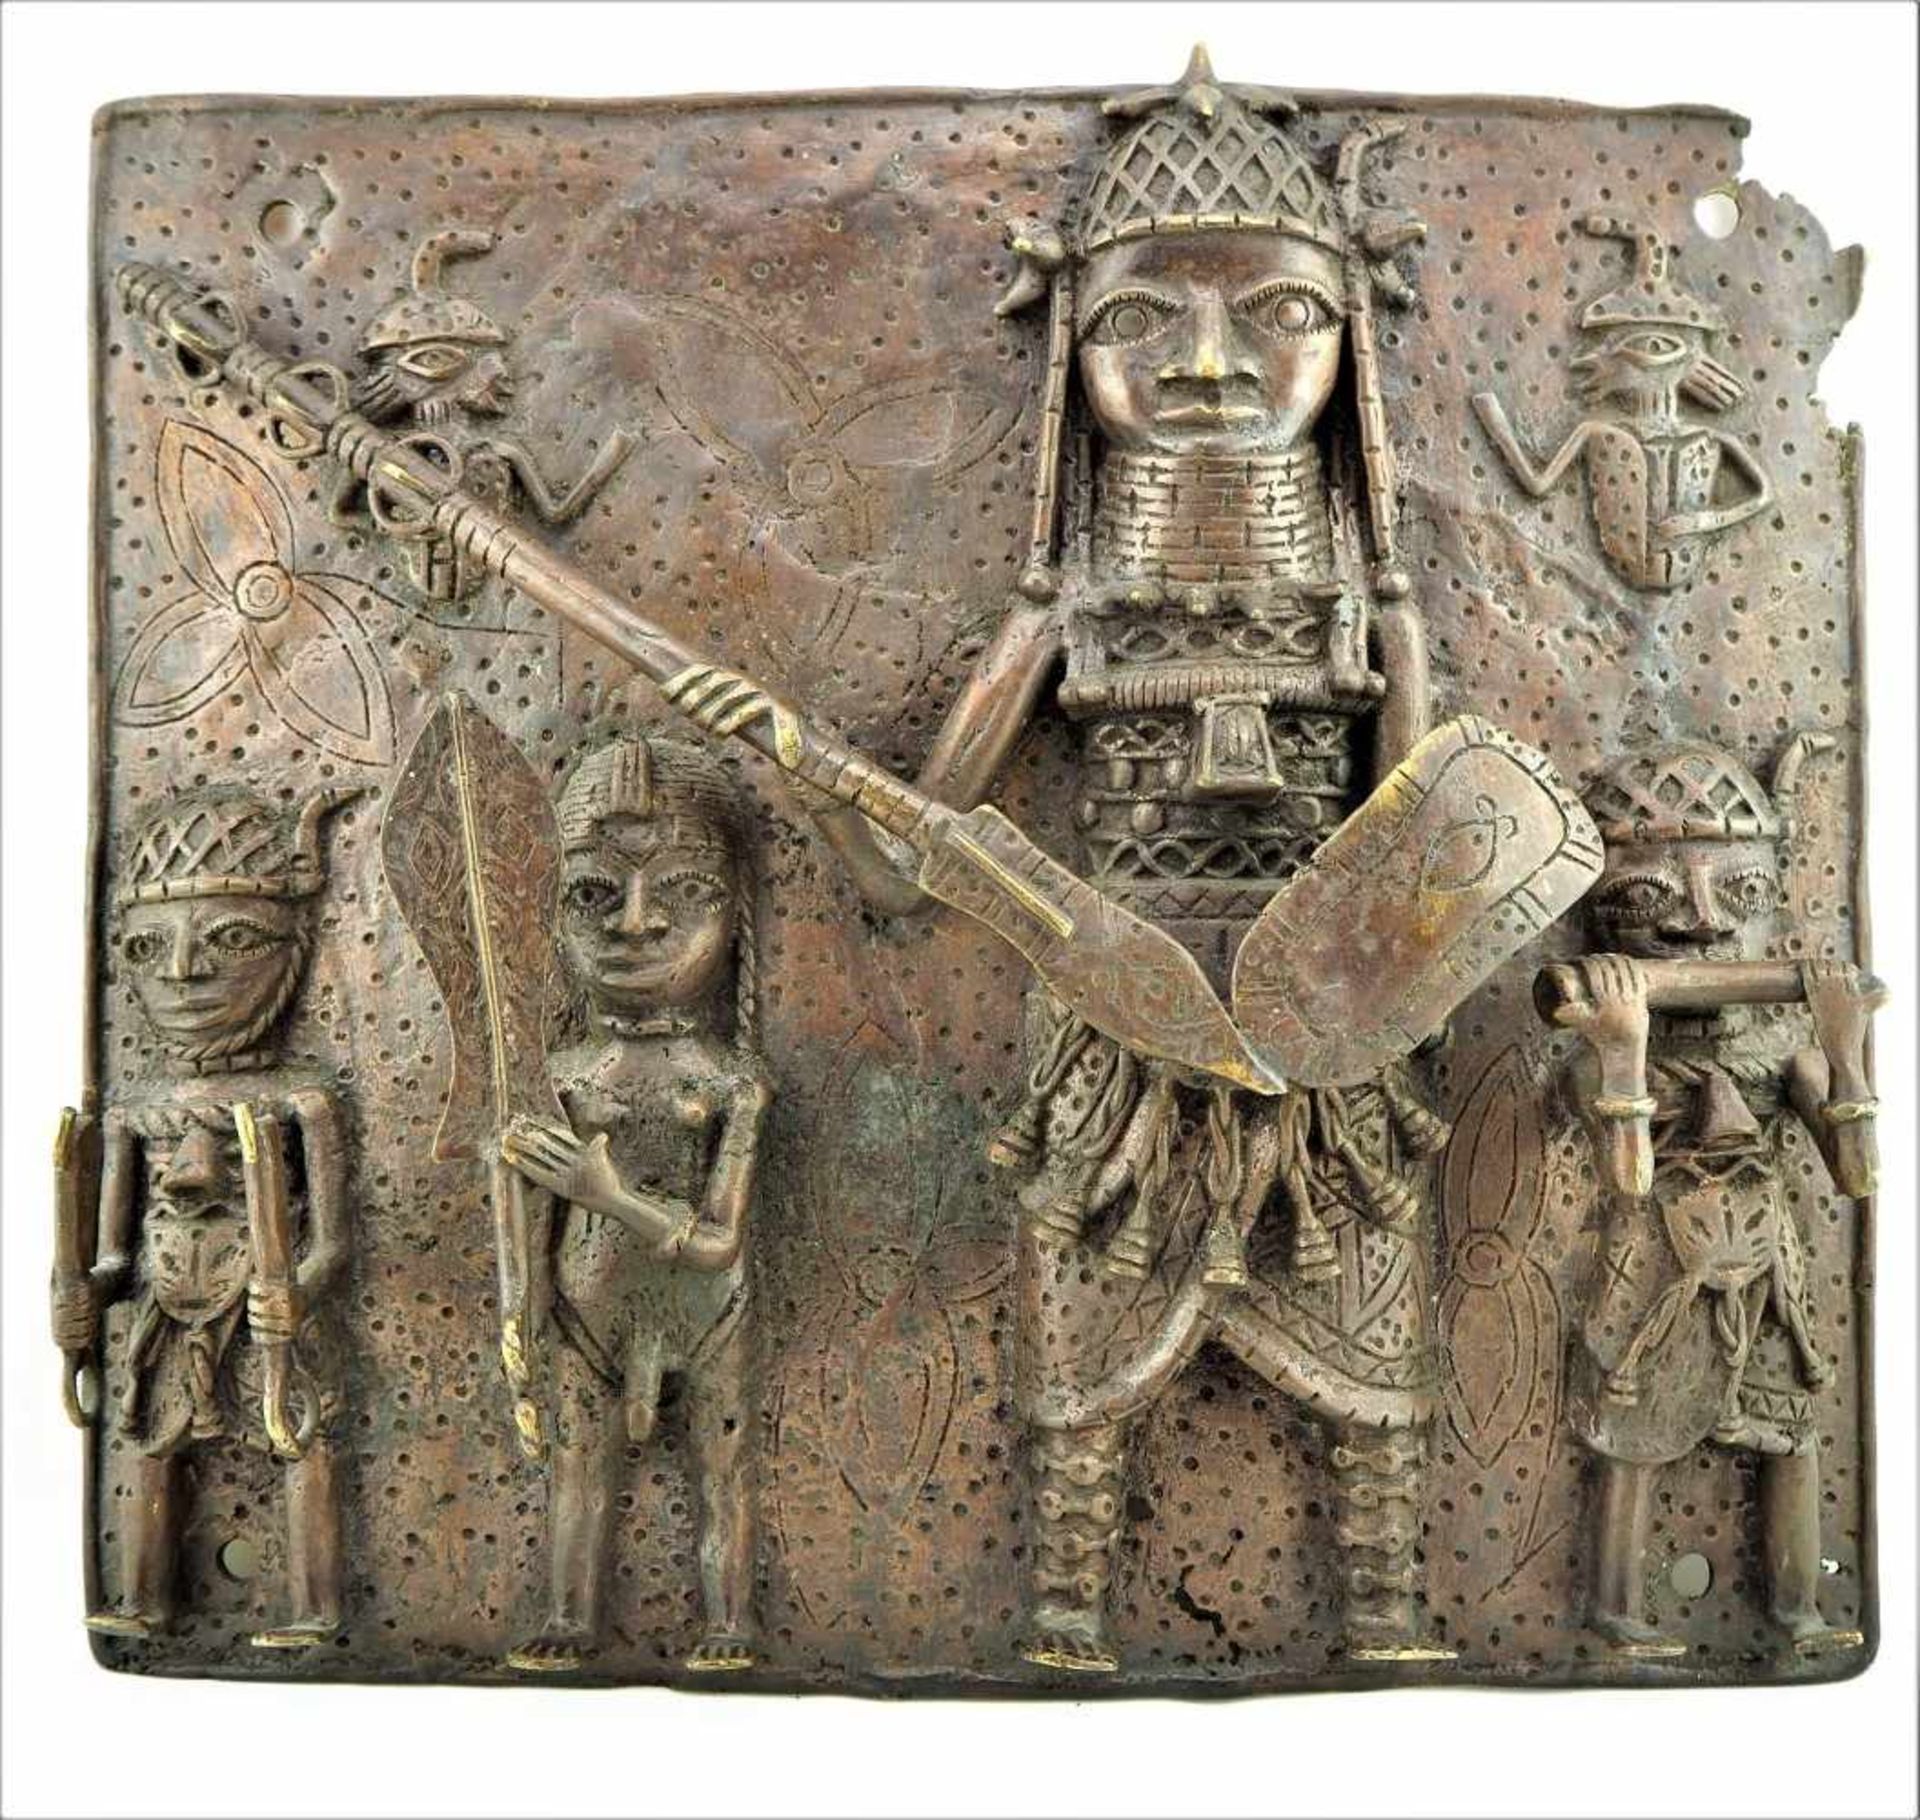 Benin BronzereliefMehrfiguriges Bronzerelief aus Benin, Westafrika. Patina. Ausbrüche. 8,15kg. H.